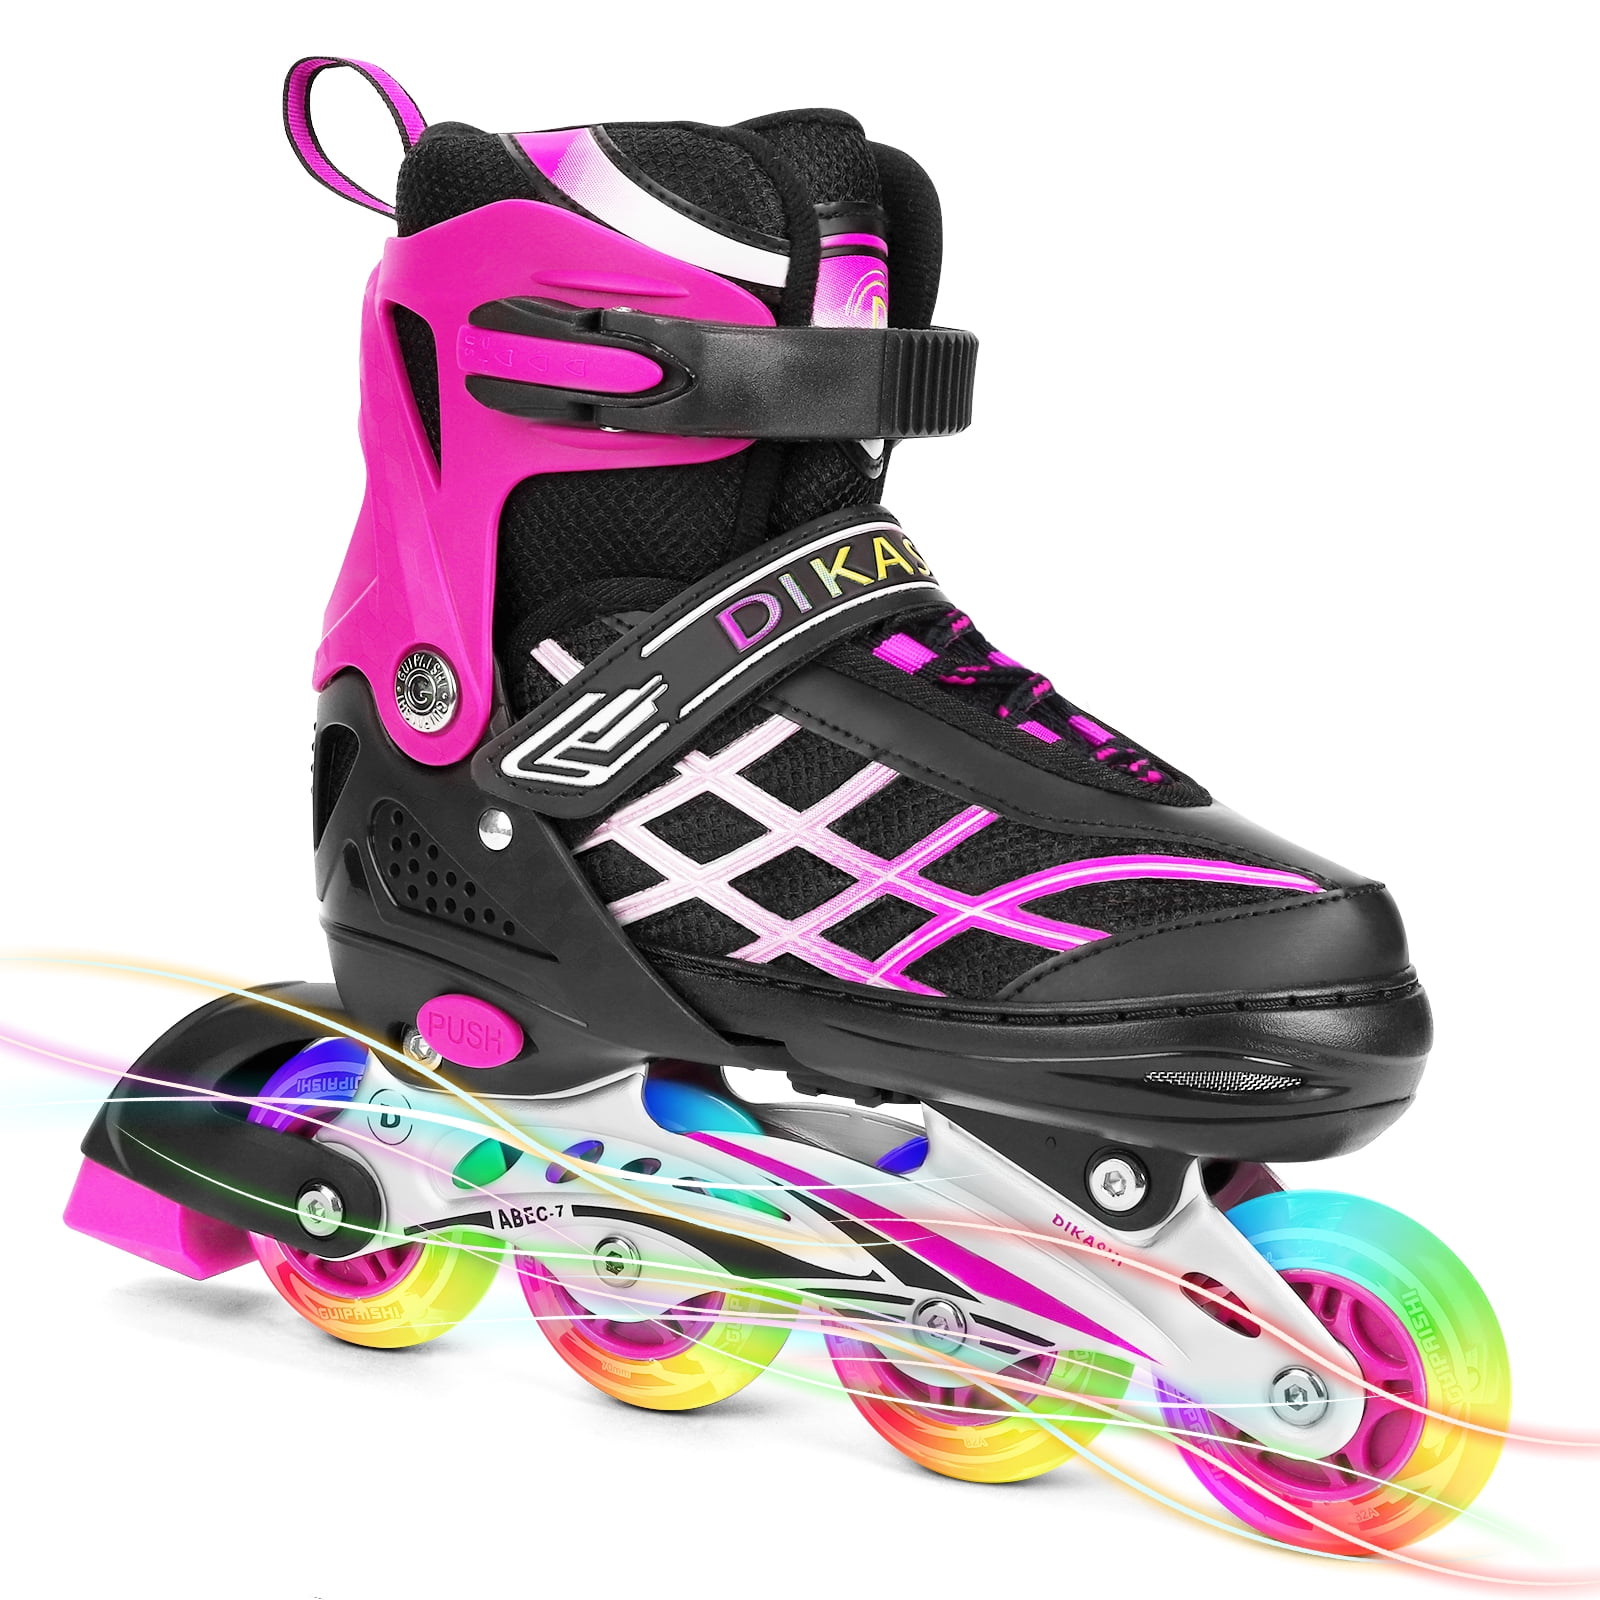 2021 New Inline Skates for Men Women Size 7 8 9 10Adjustable Roller Blades*Flash 